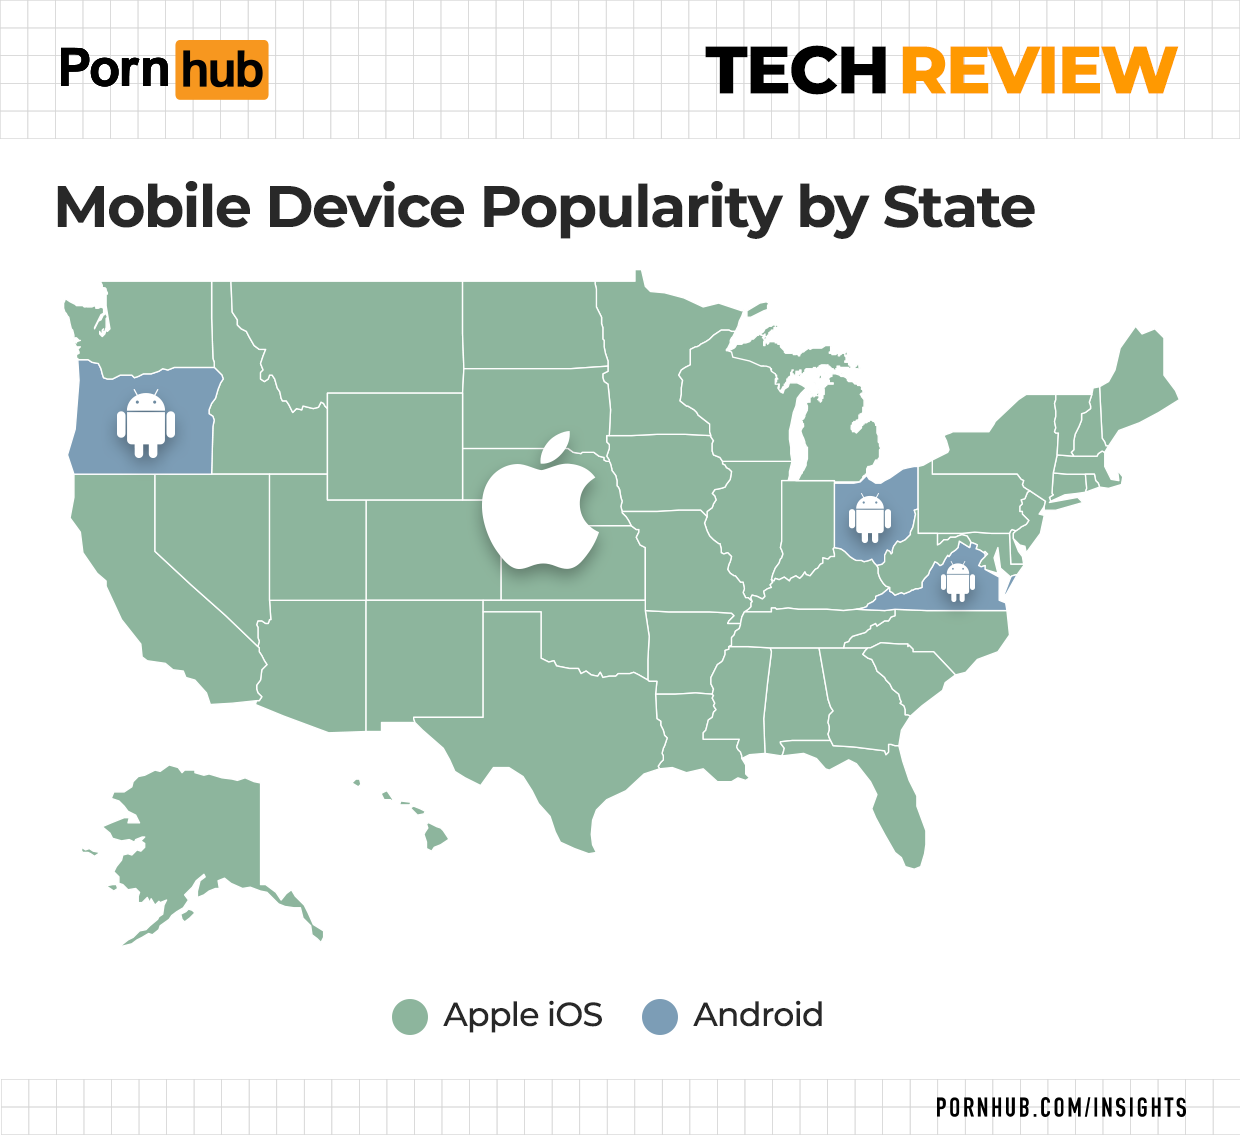 The Pornhub Tech Review image